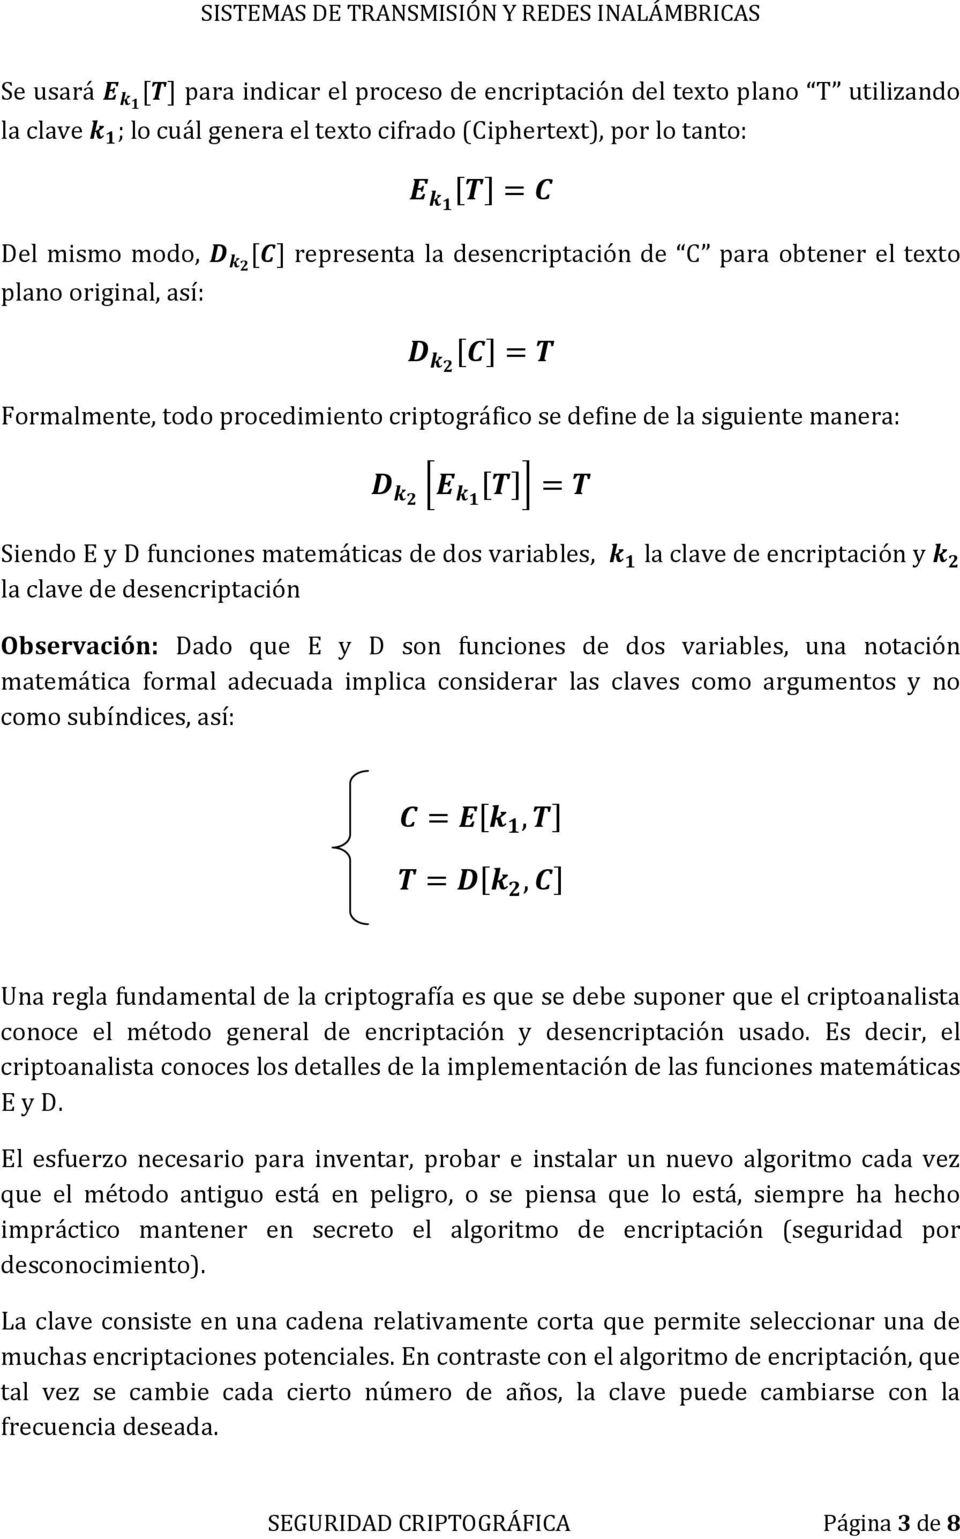 encriptación y la clave de desencriptación Observación: Dado que E y D son funciones de dos variables, una notación matemática formal adecuada implica considerar las claves como argumentos y no como